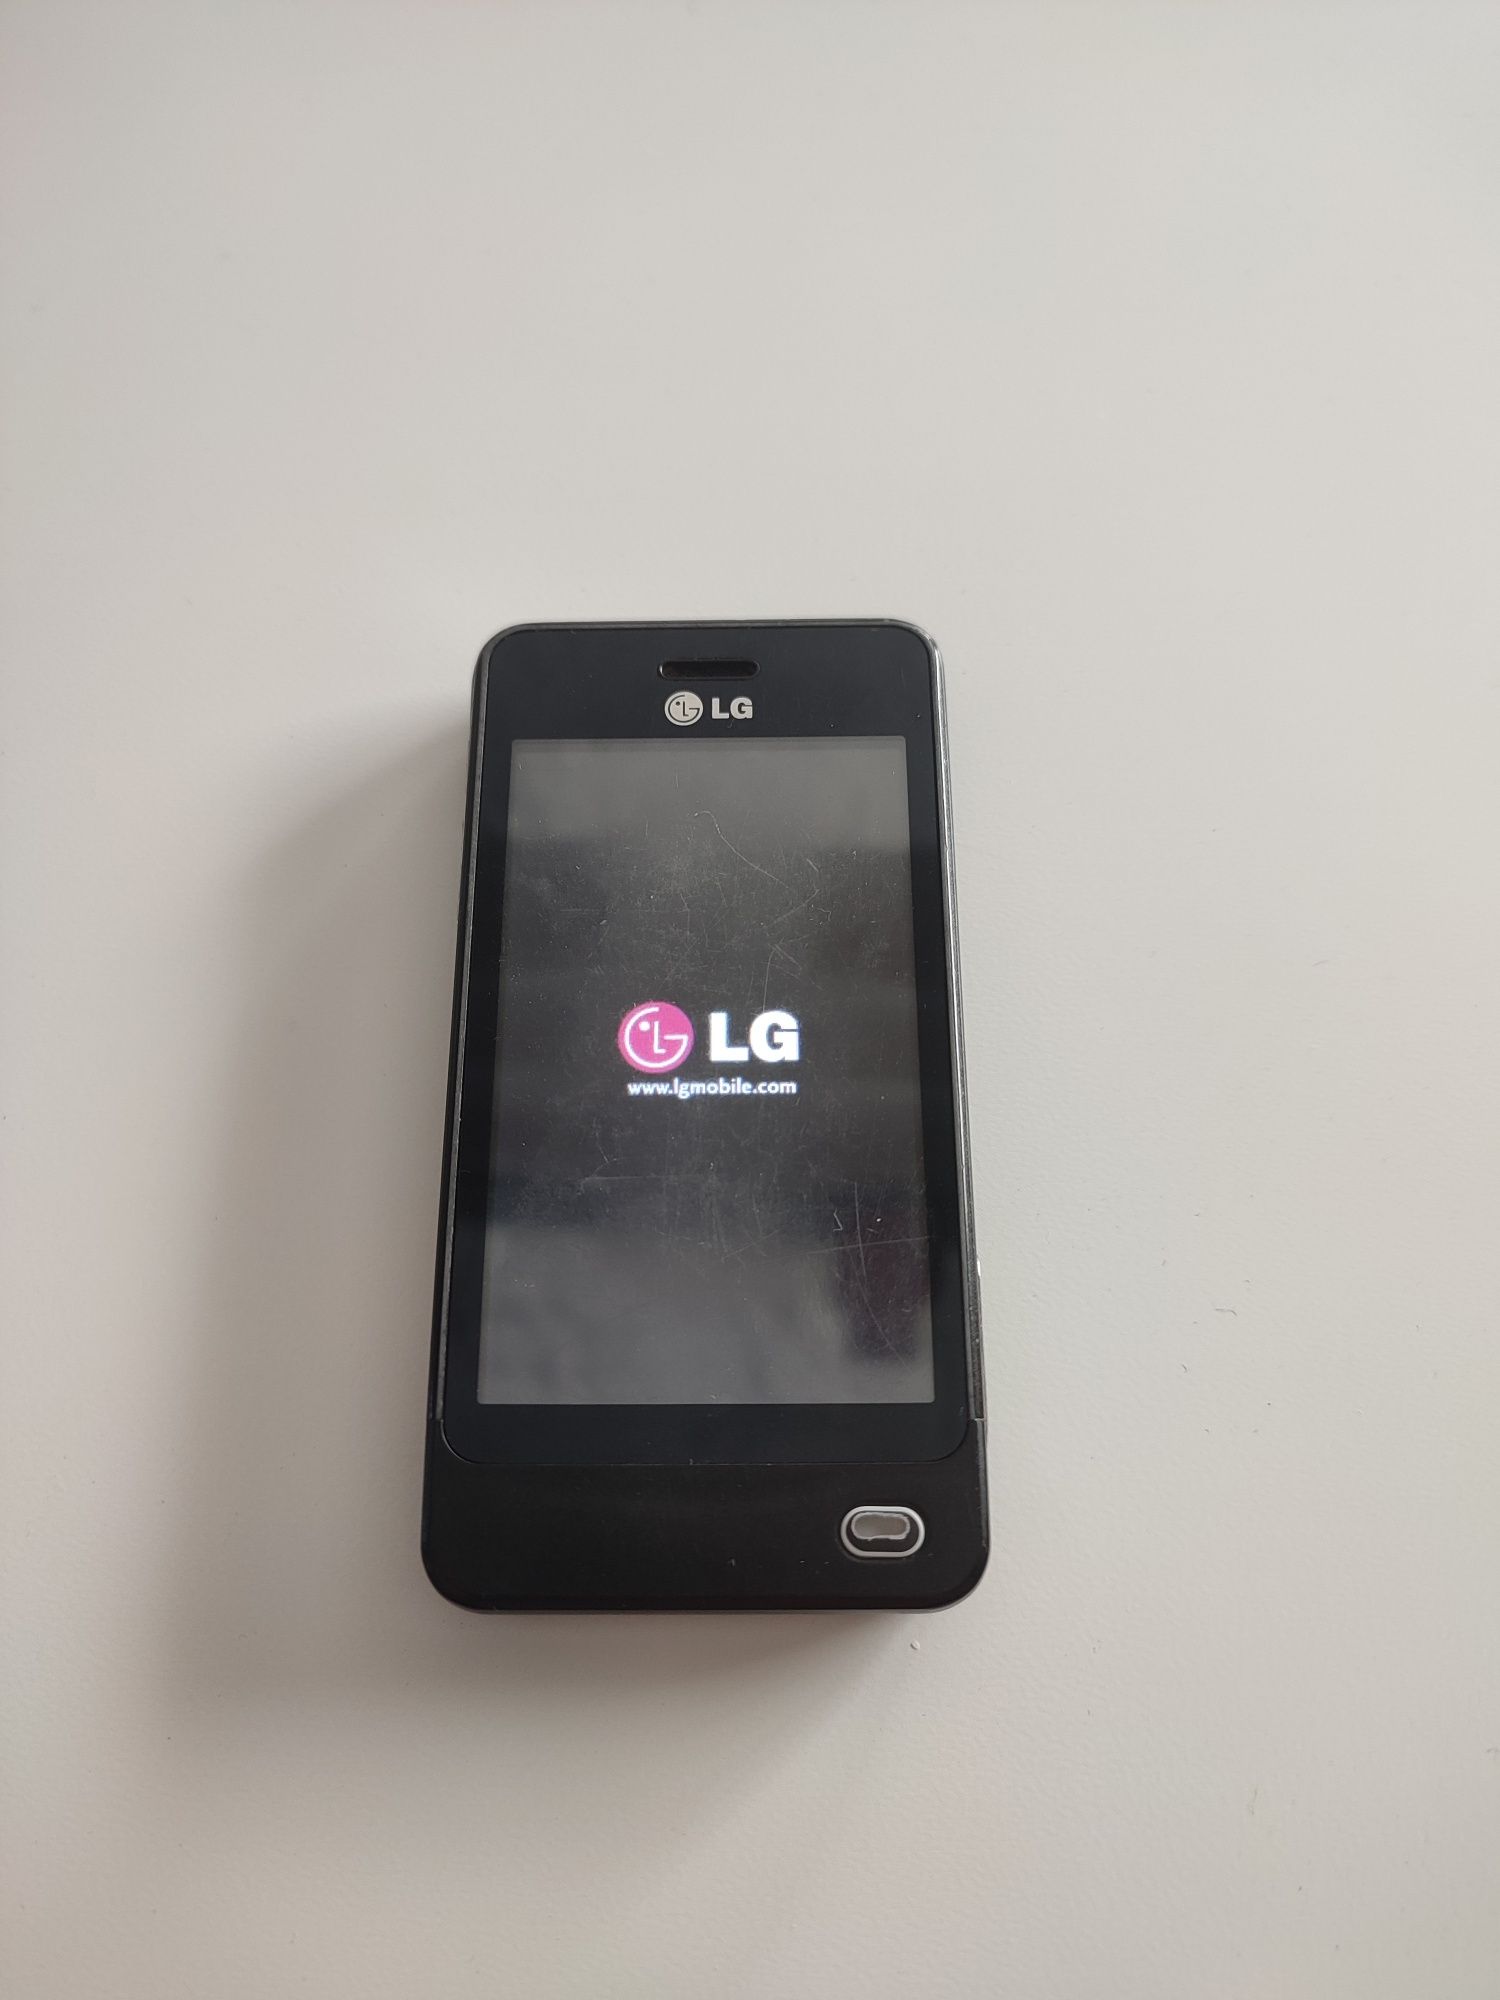 Telemóvel LG GD510